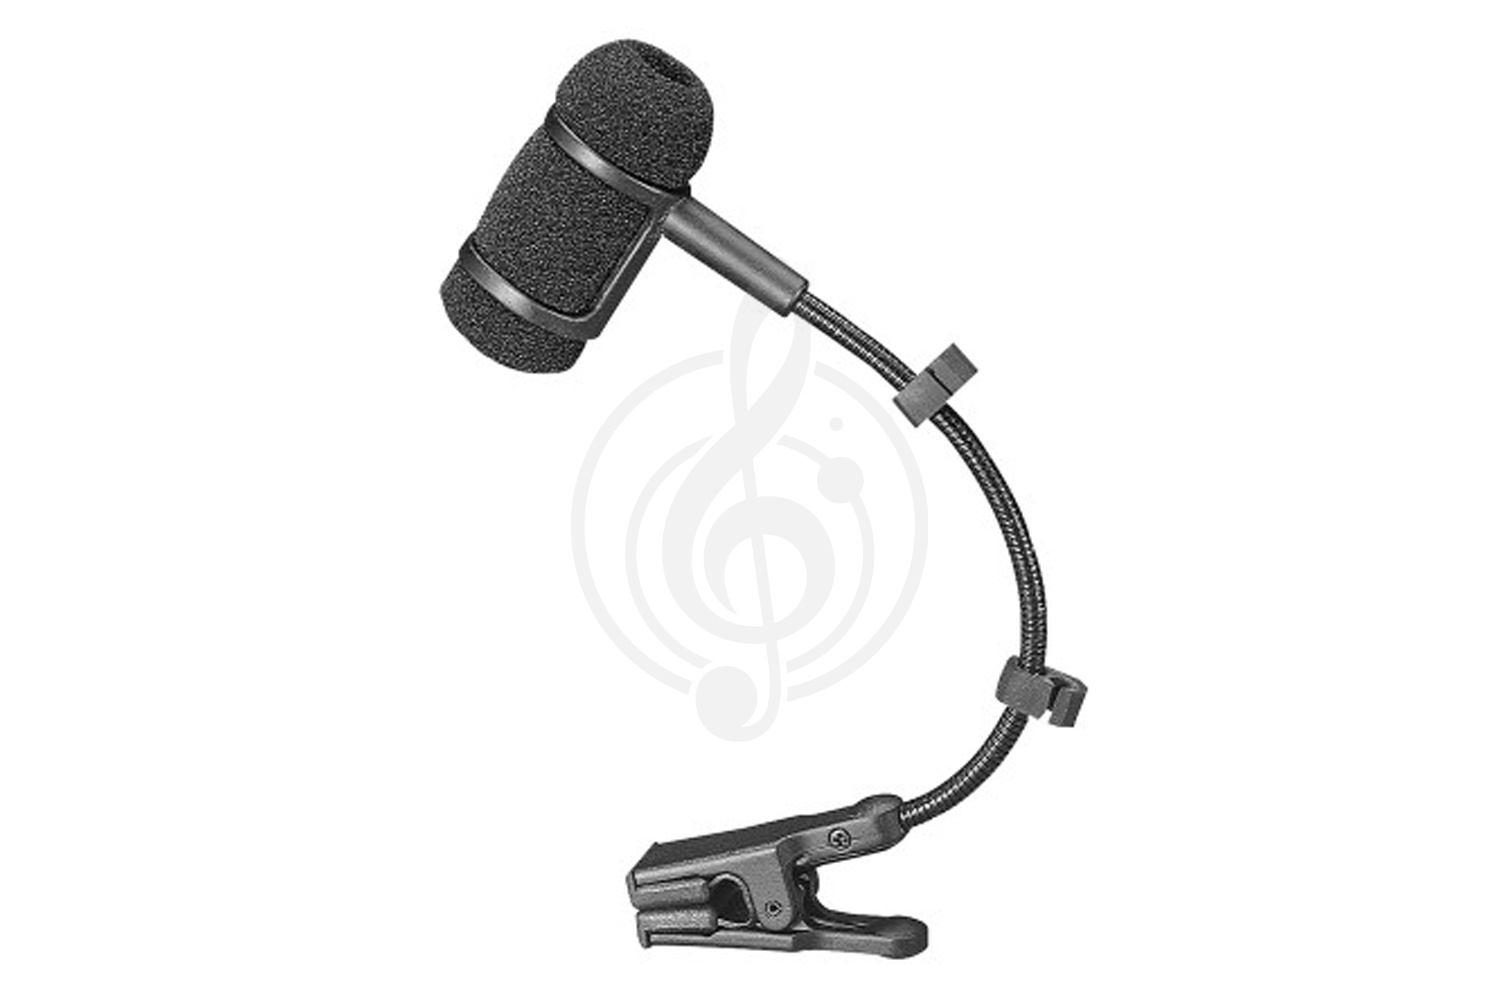 Инструментальный микрофон Инструментальные микрофоны AUDIO-TECHNICA Audio-Technica PRO35СW - Микрофон инструментальный конденсаторный (с разъёмом HRS для радиосистем) PRO35СW - фото 1